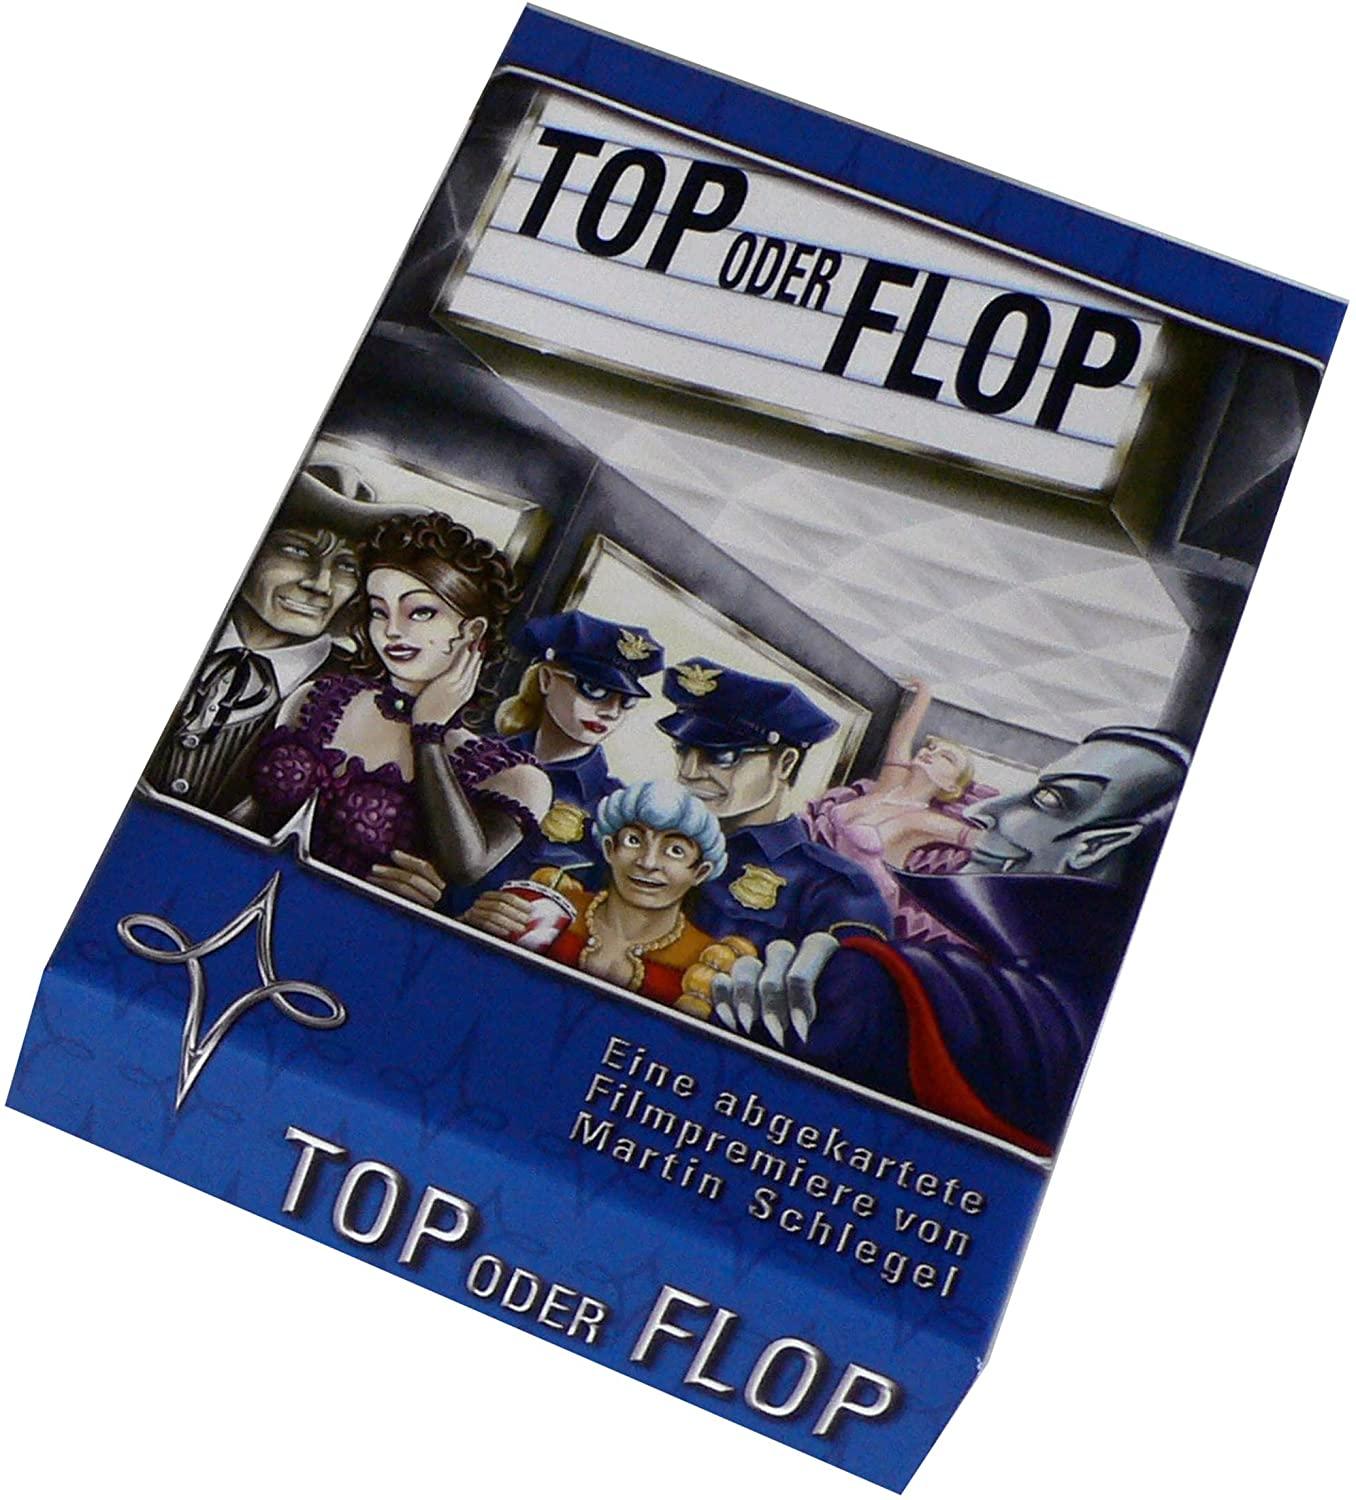 Top oder Flop